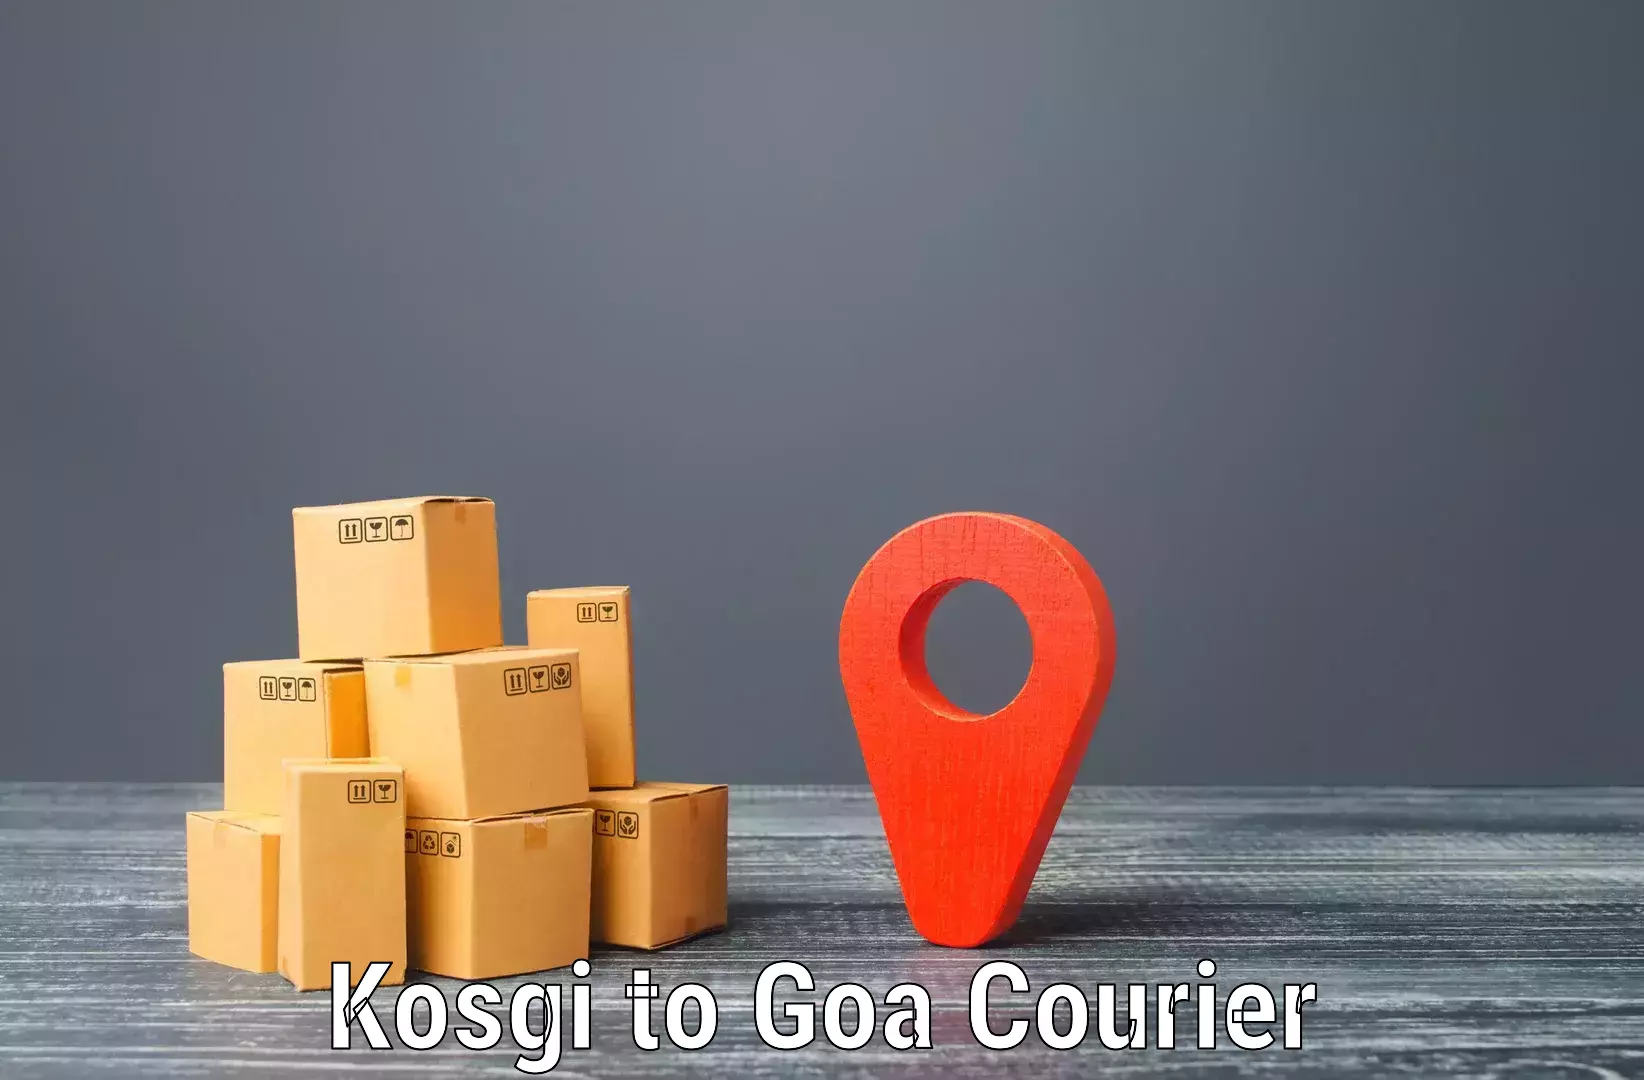 Comprehensive shipping services Kosgi to Panaji